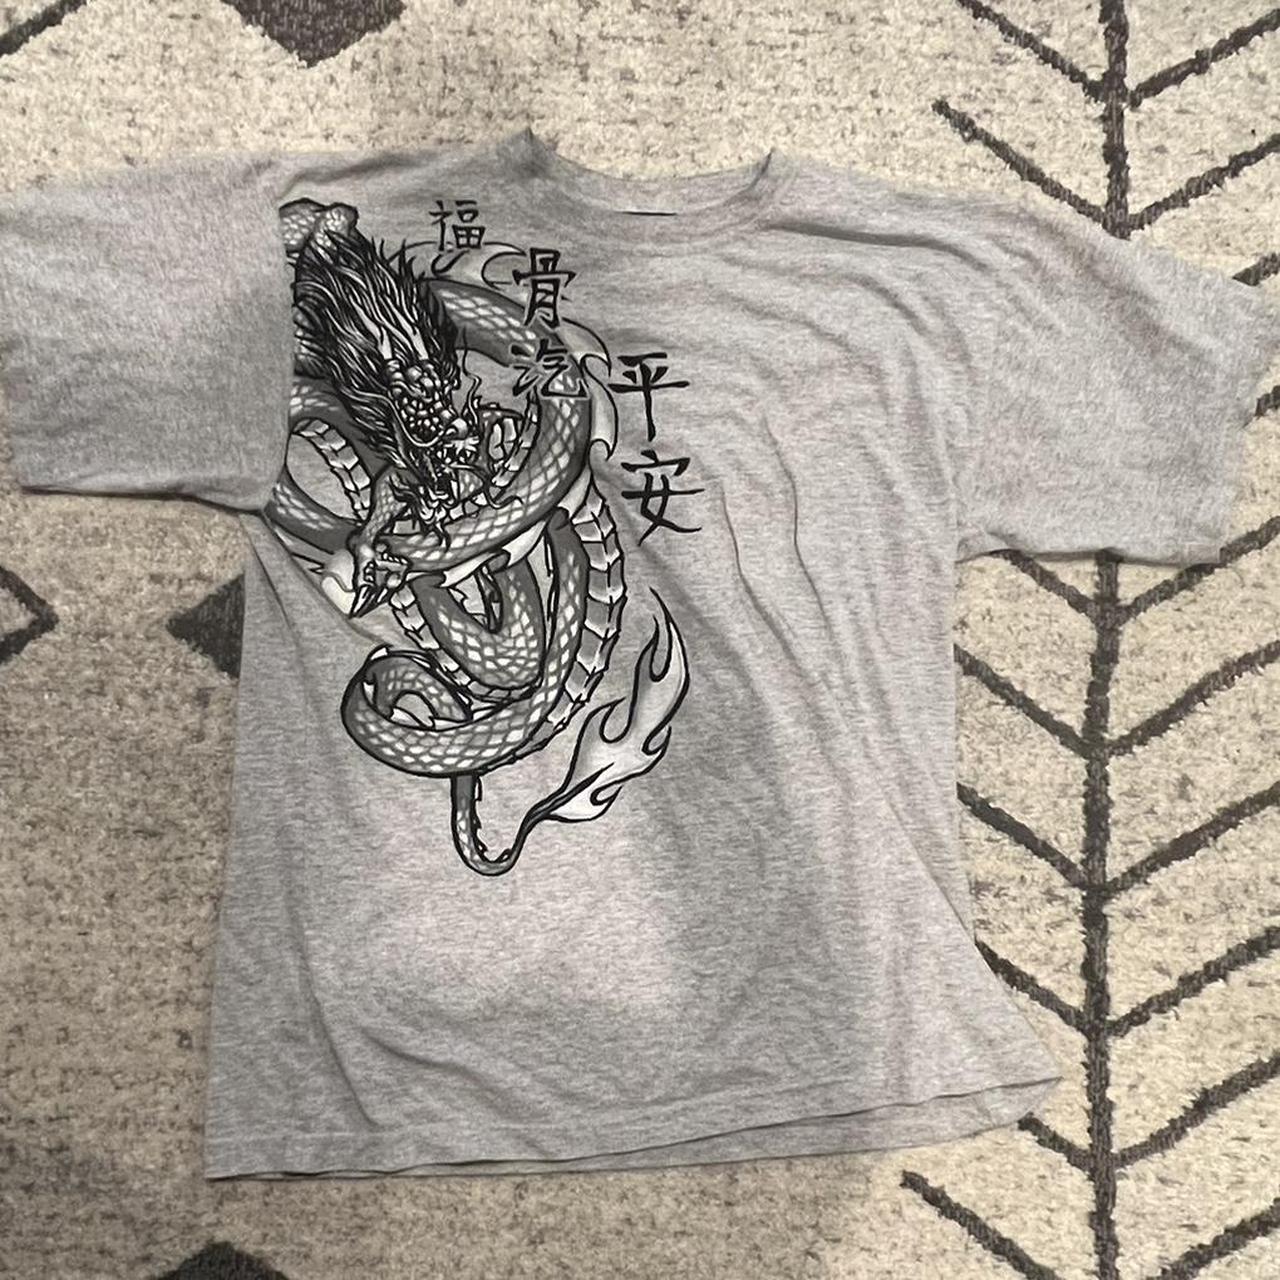 JNCO Men's Grey T-shirt | Depop